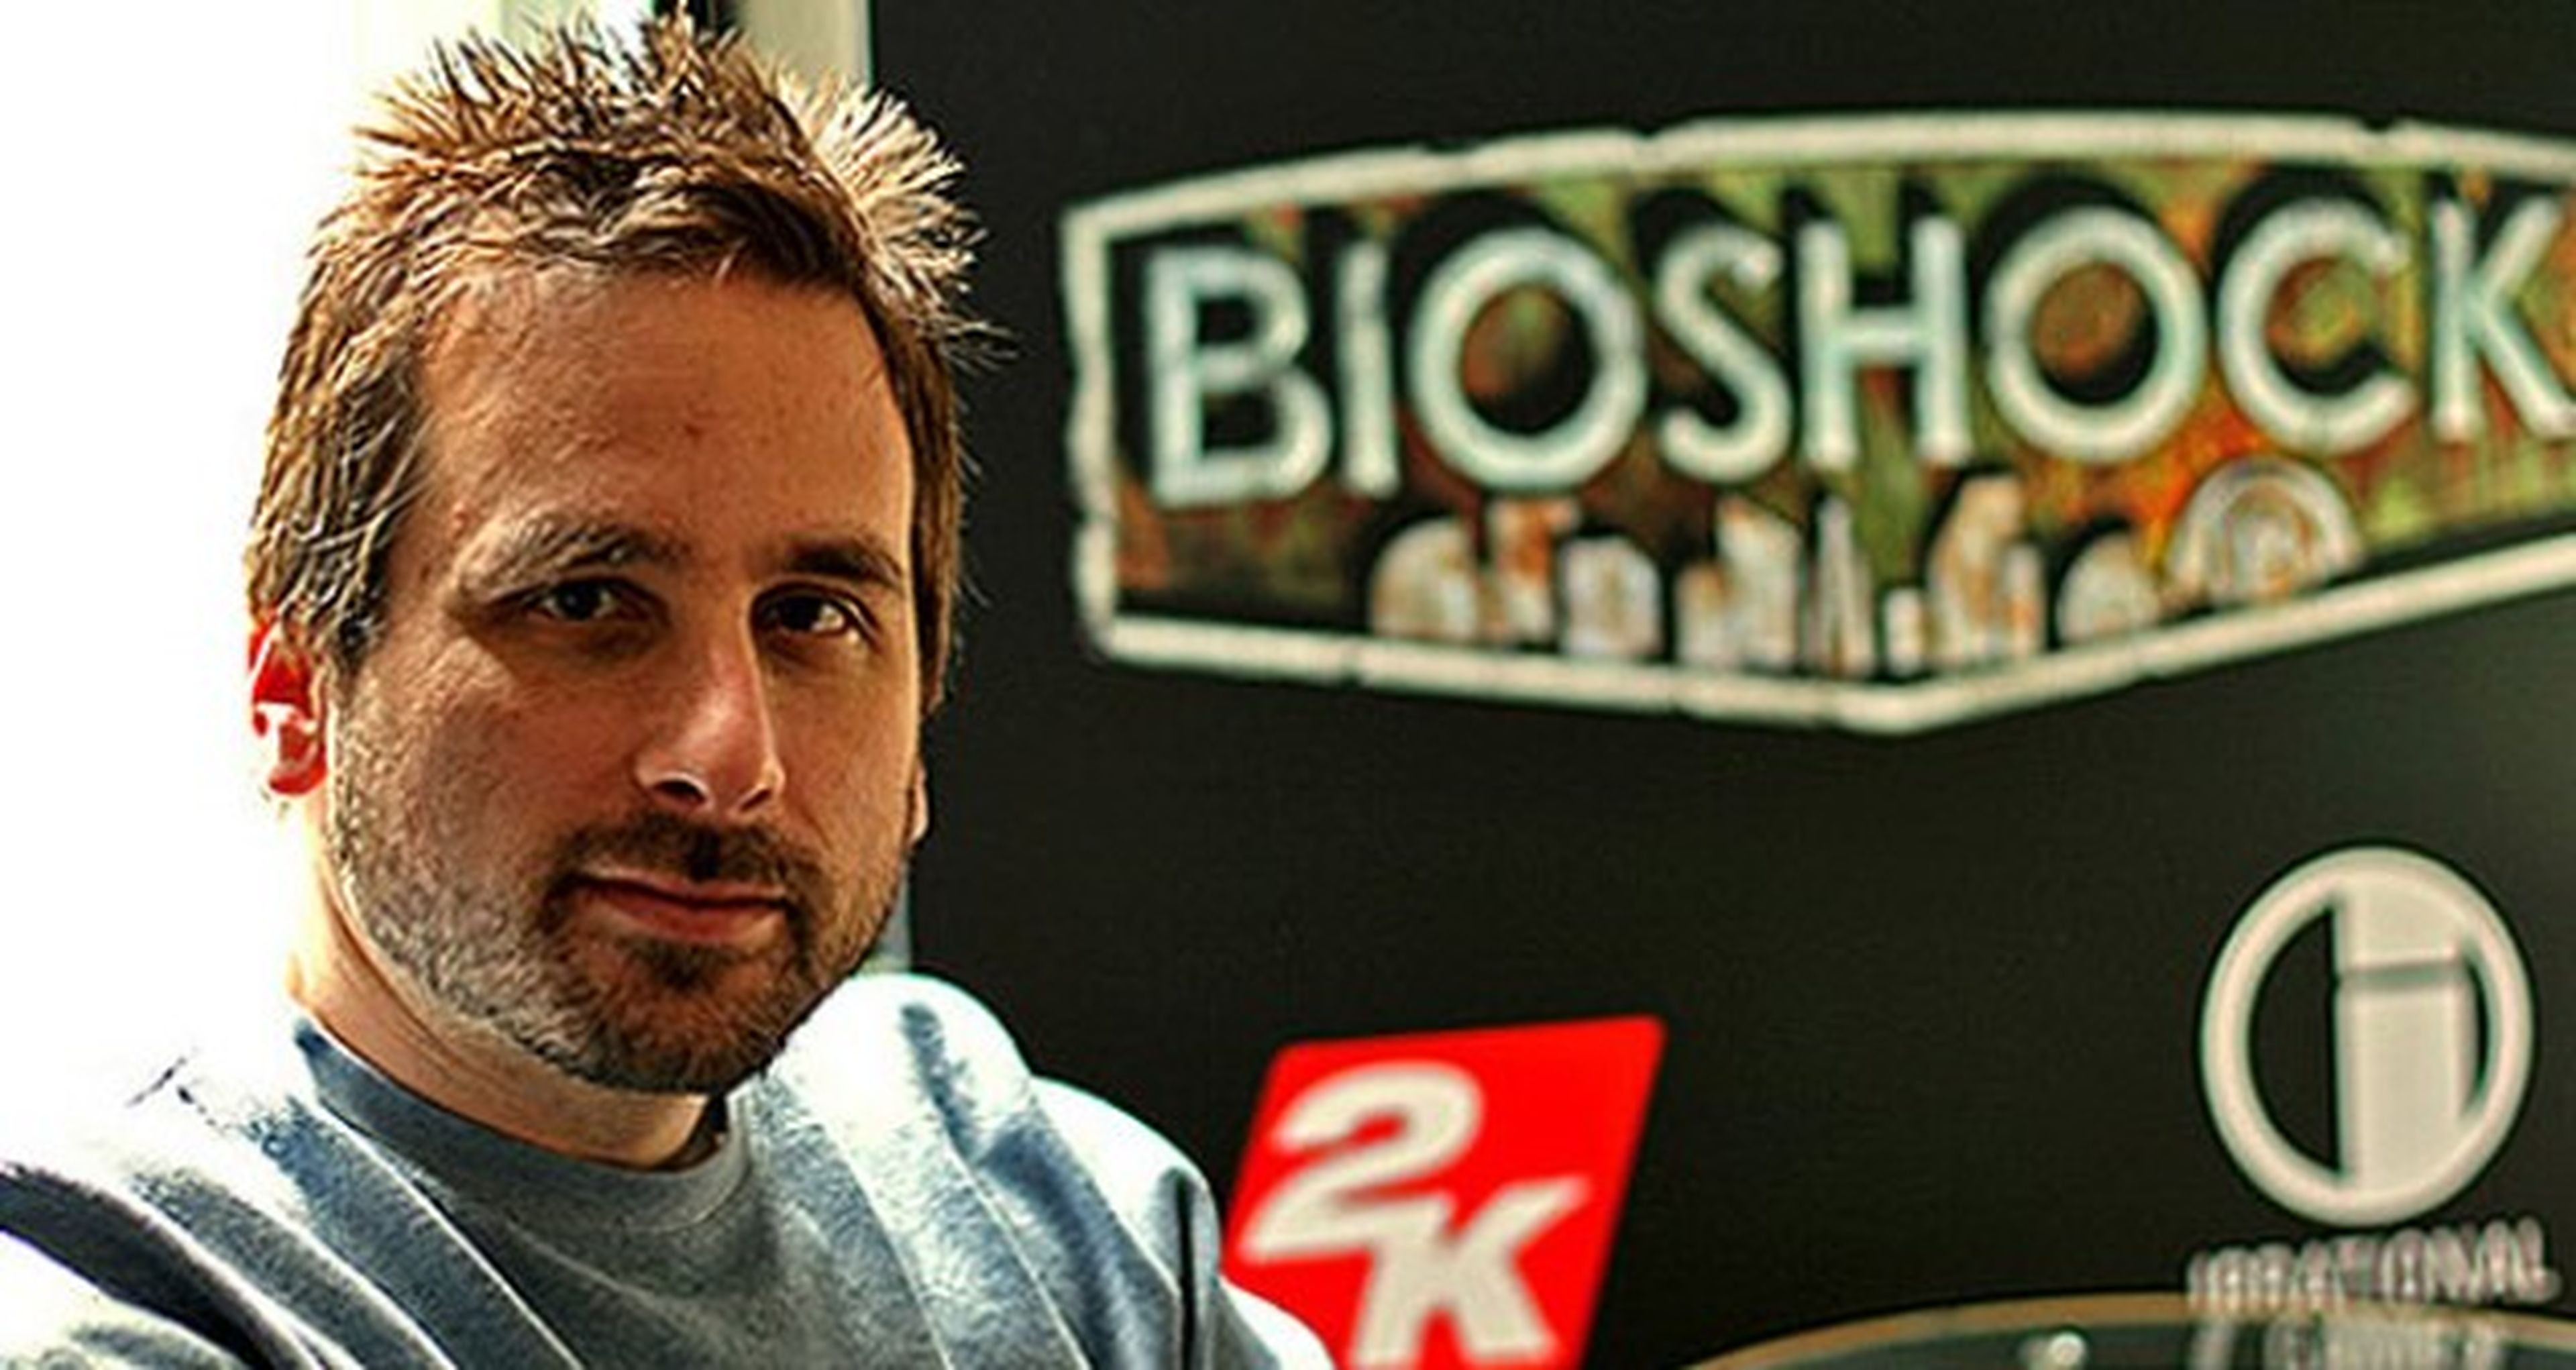 Los 10 juegos favoritos de Ken Levine (BioShock) en 2013